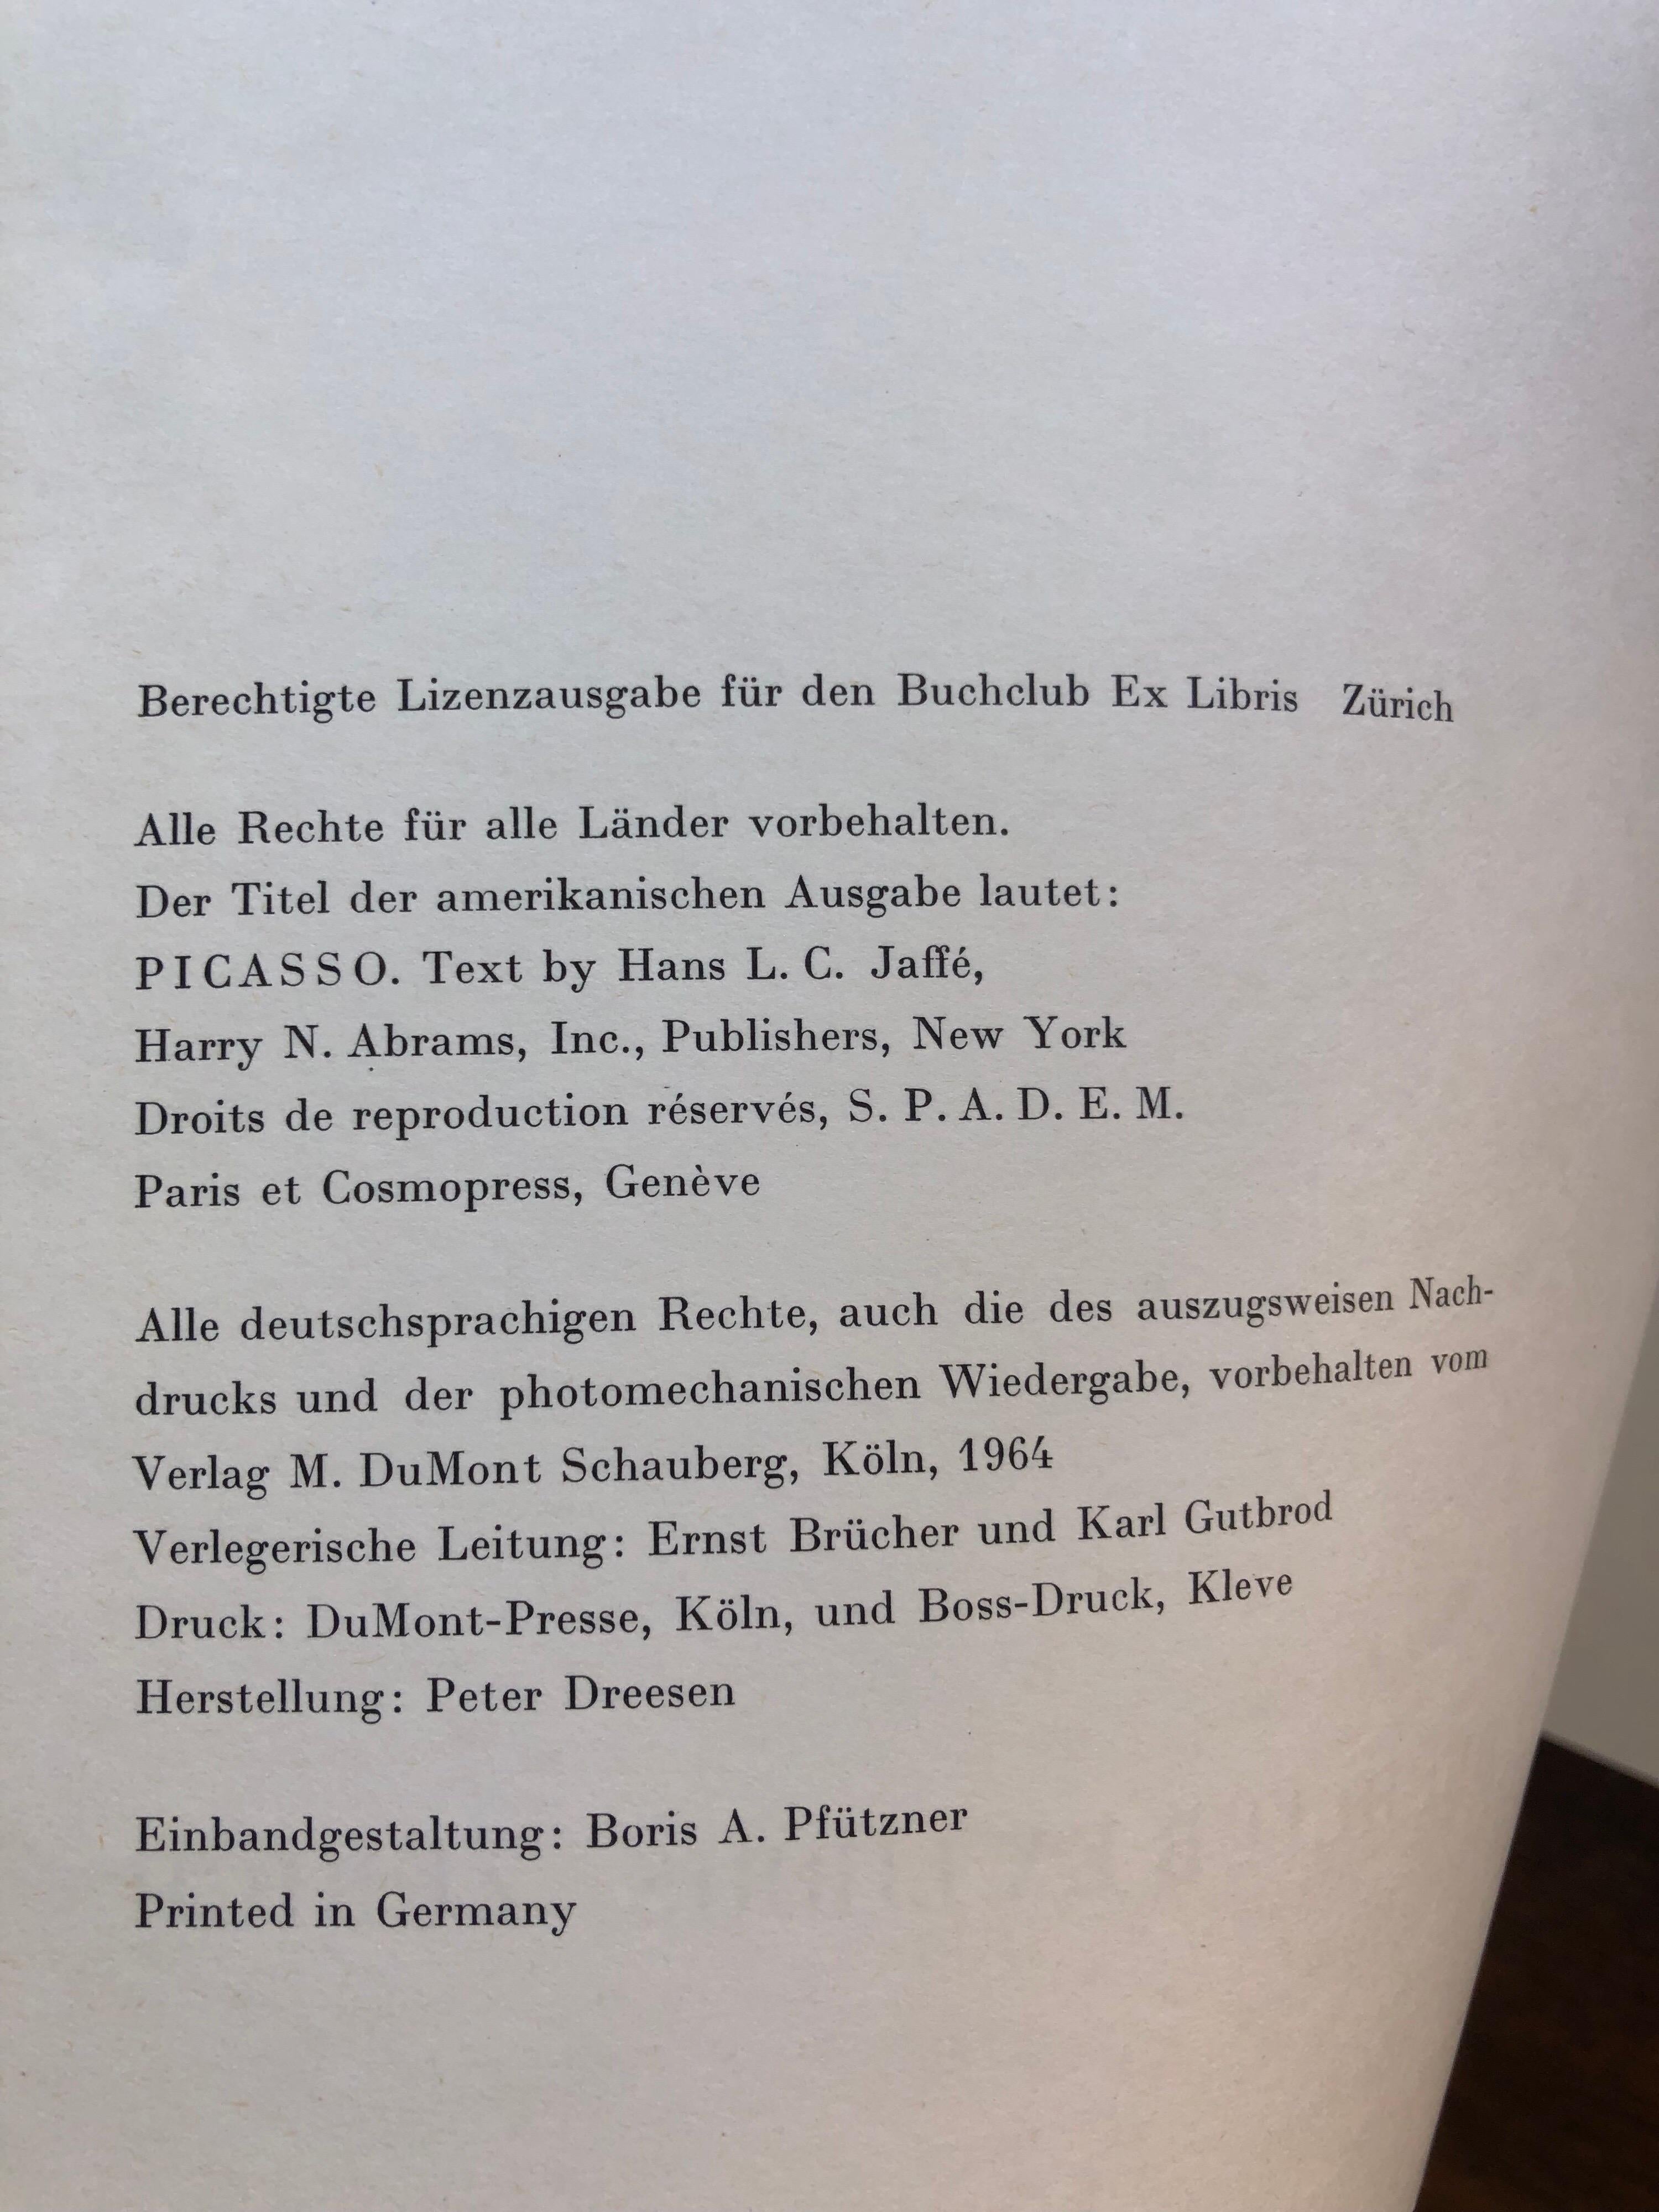 Picasso, Hans Jaffe, Buchclub Zurich, Droits Paris et Cosmopress, 1969 11